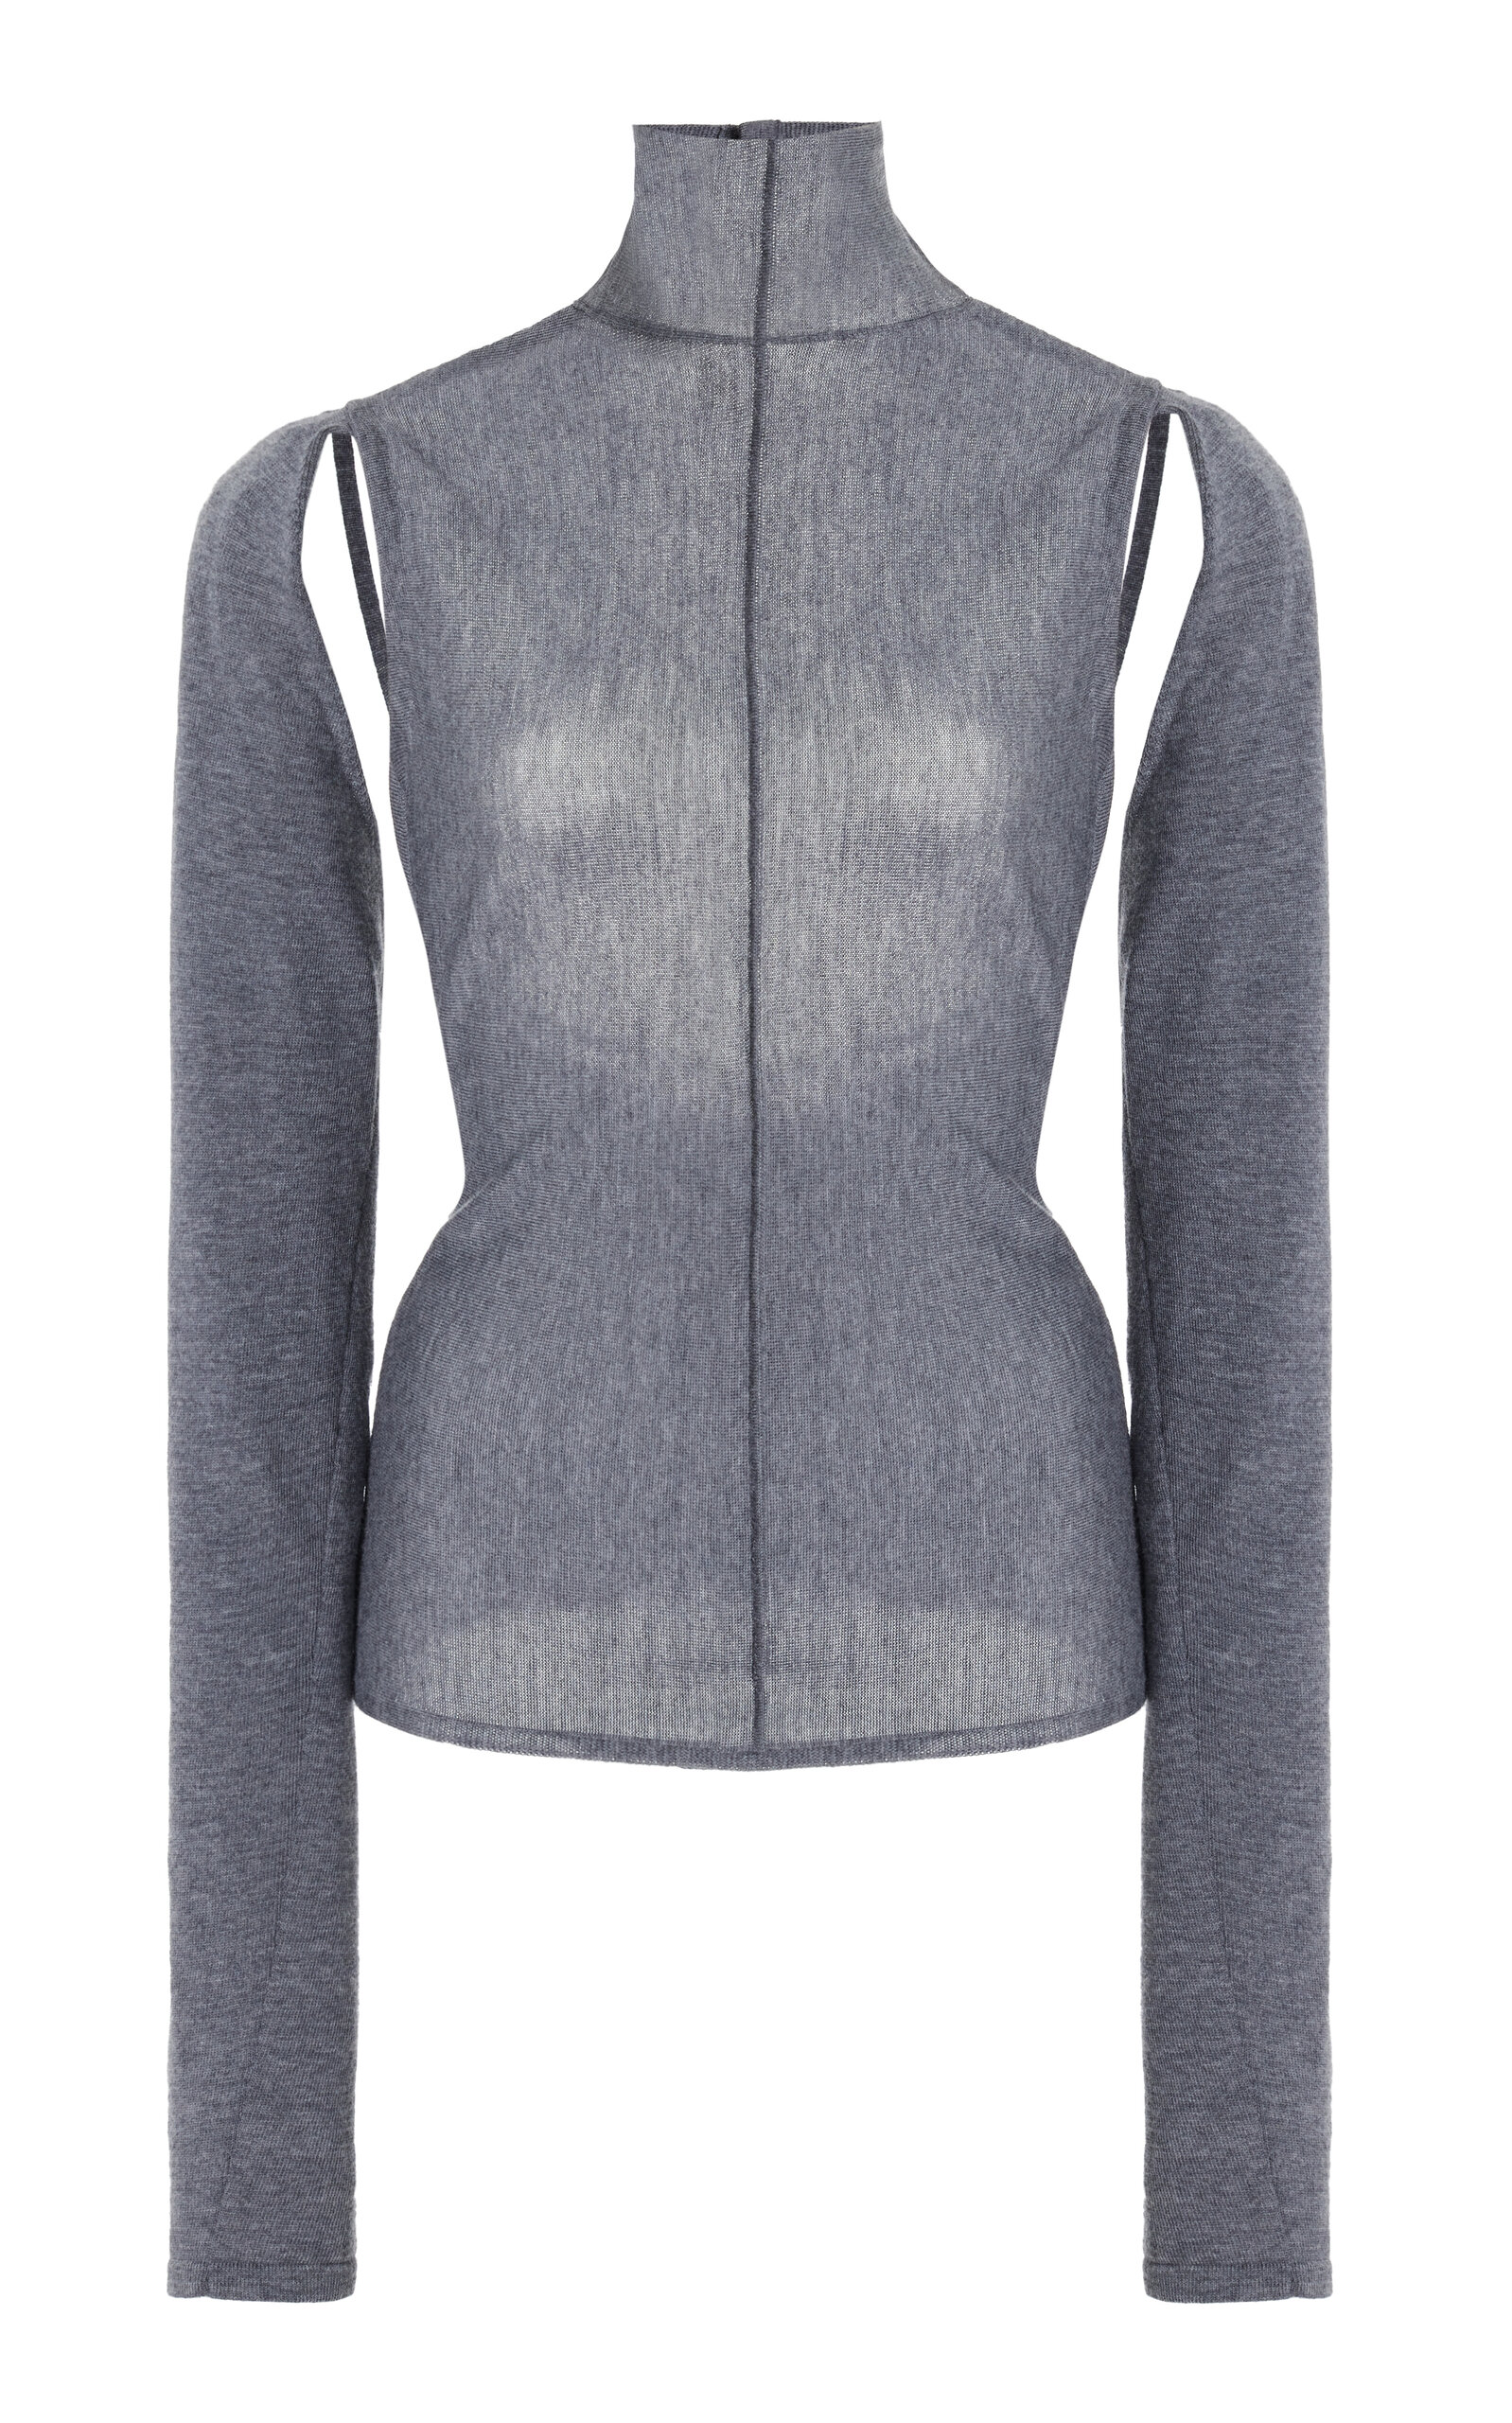 Khaite - Marlowe Cutout Wool Sweater - Grey - M - Moda Operandi